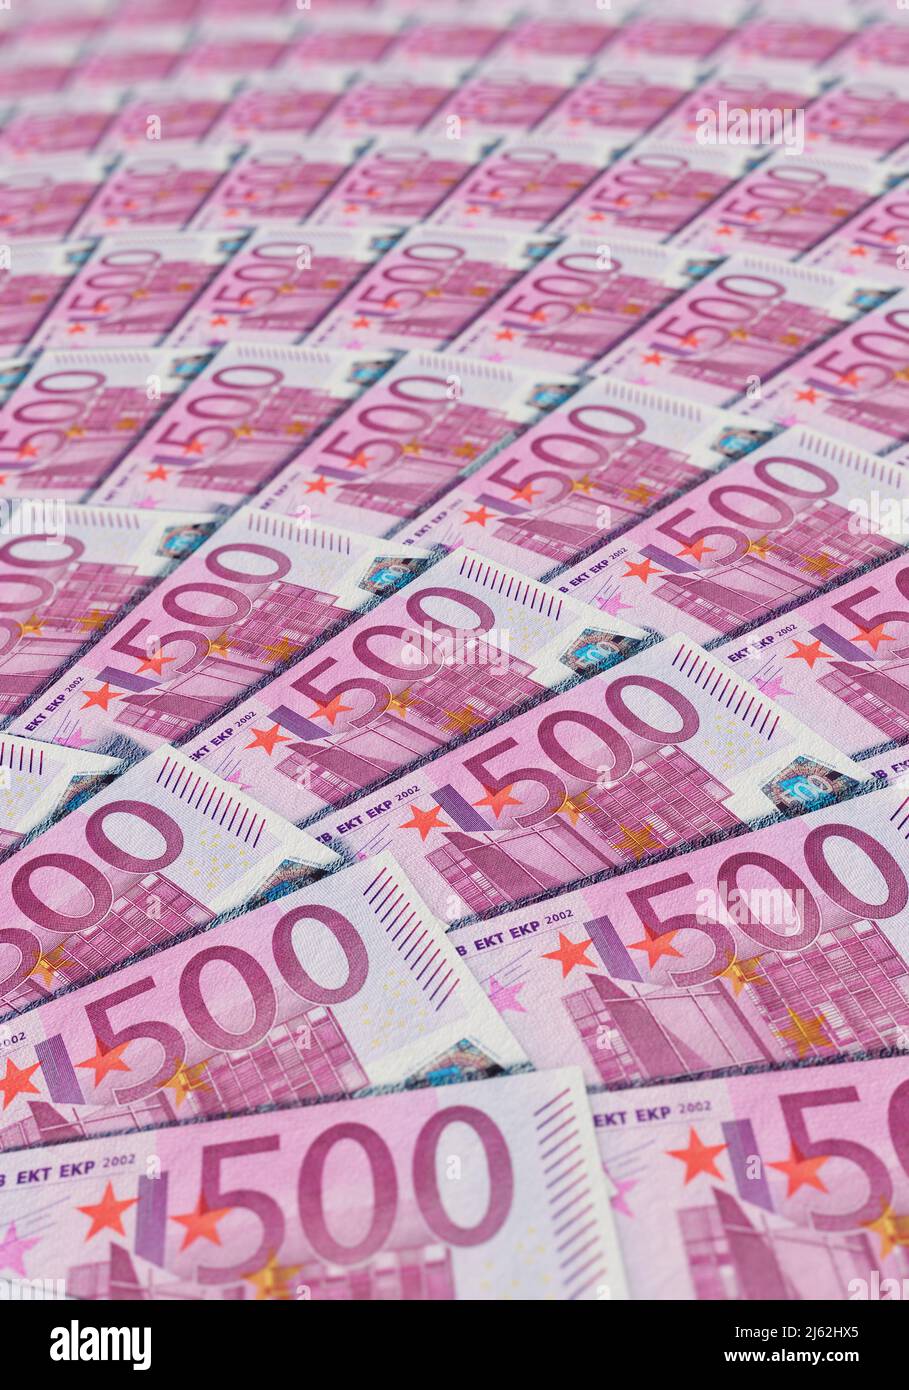 Viele 500 Euroscheine, fächerformig im Hochformat. Stock Photo